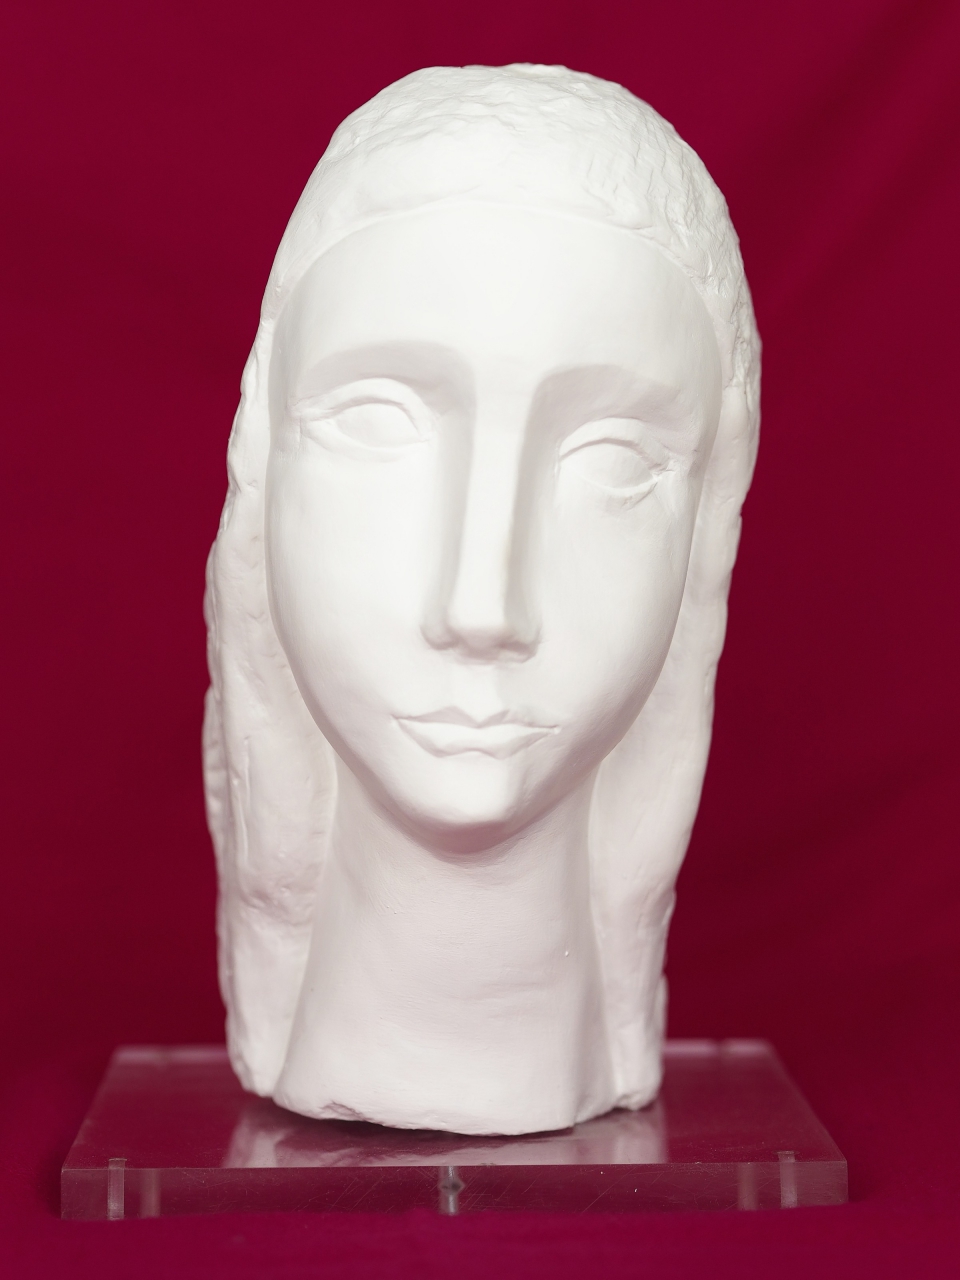 Femme, woman, 25 cm (EUR 500)